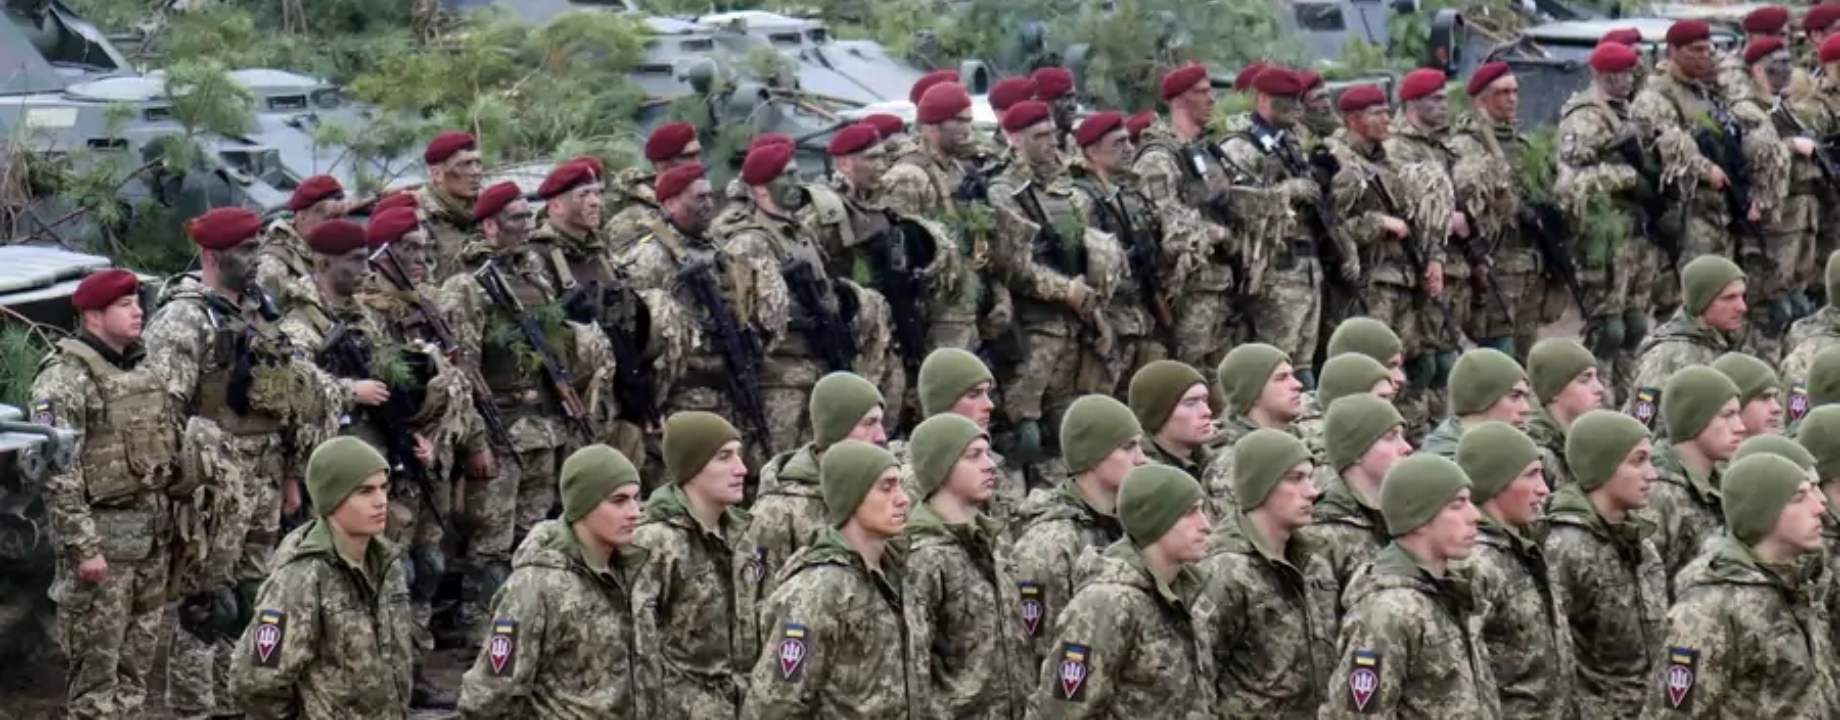 Ukrainian Air Assault Forces Command via Reuters